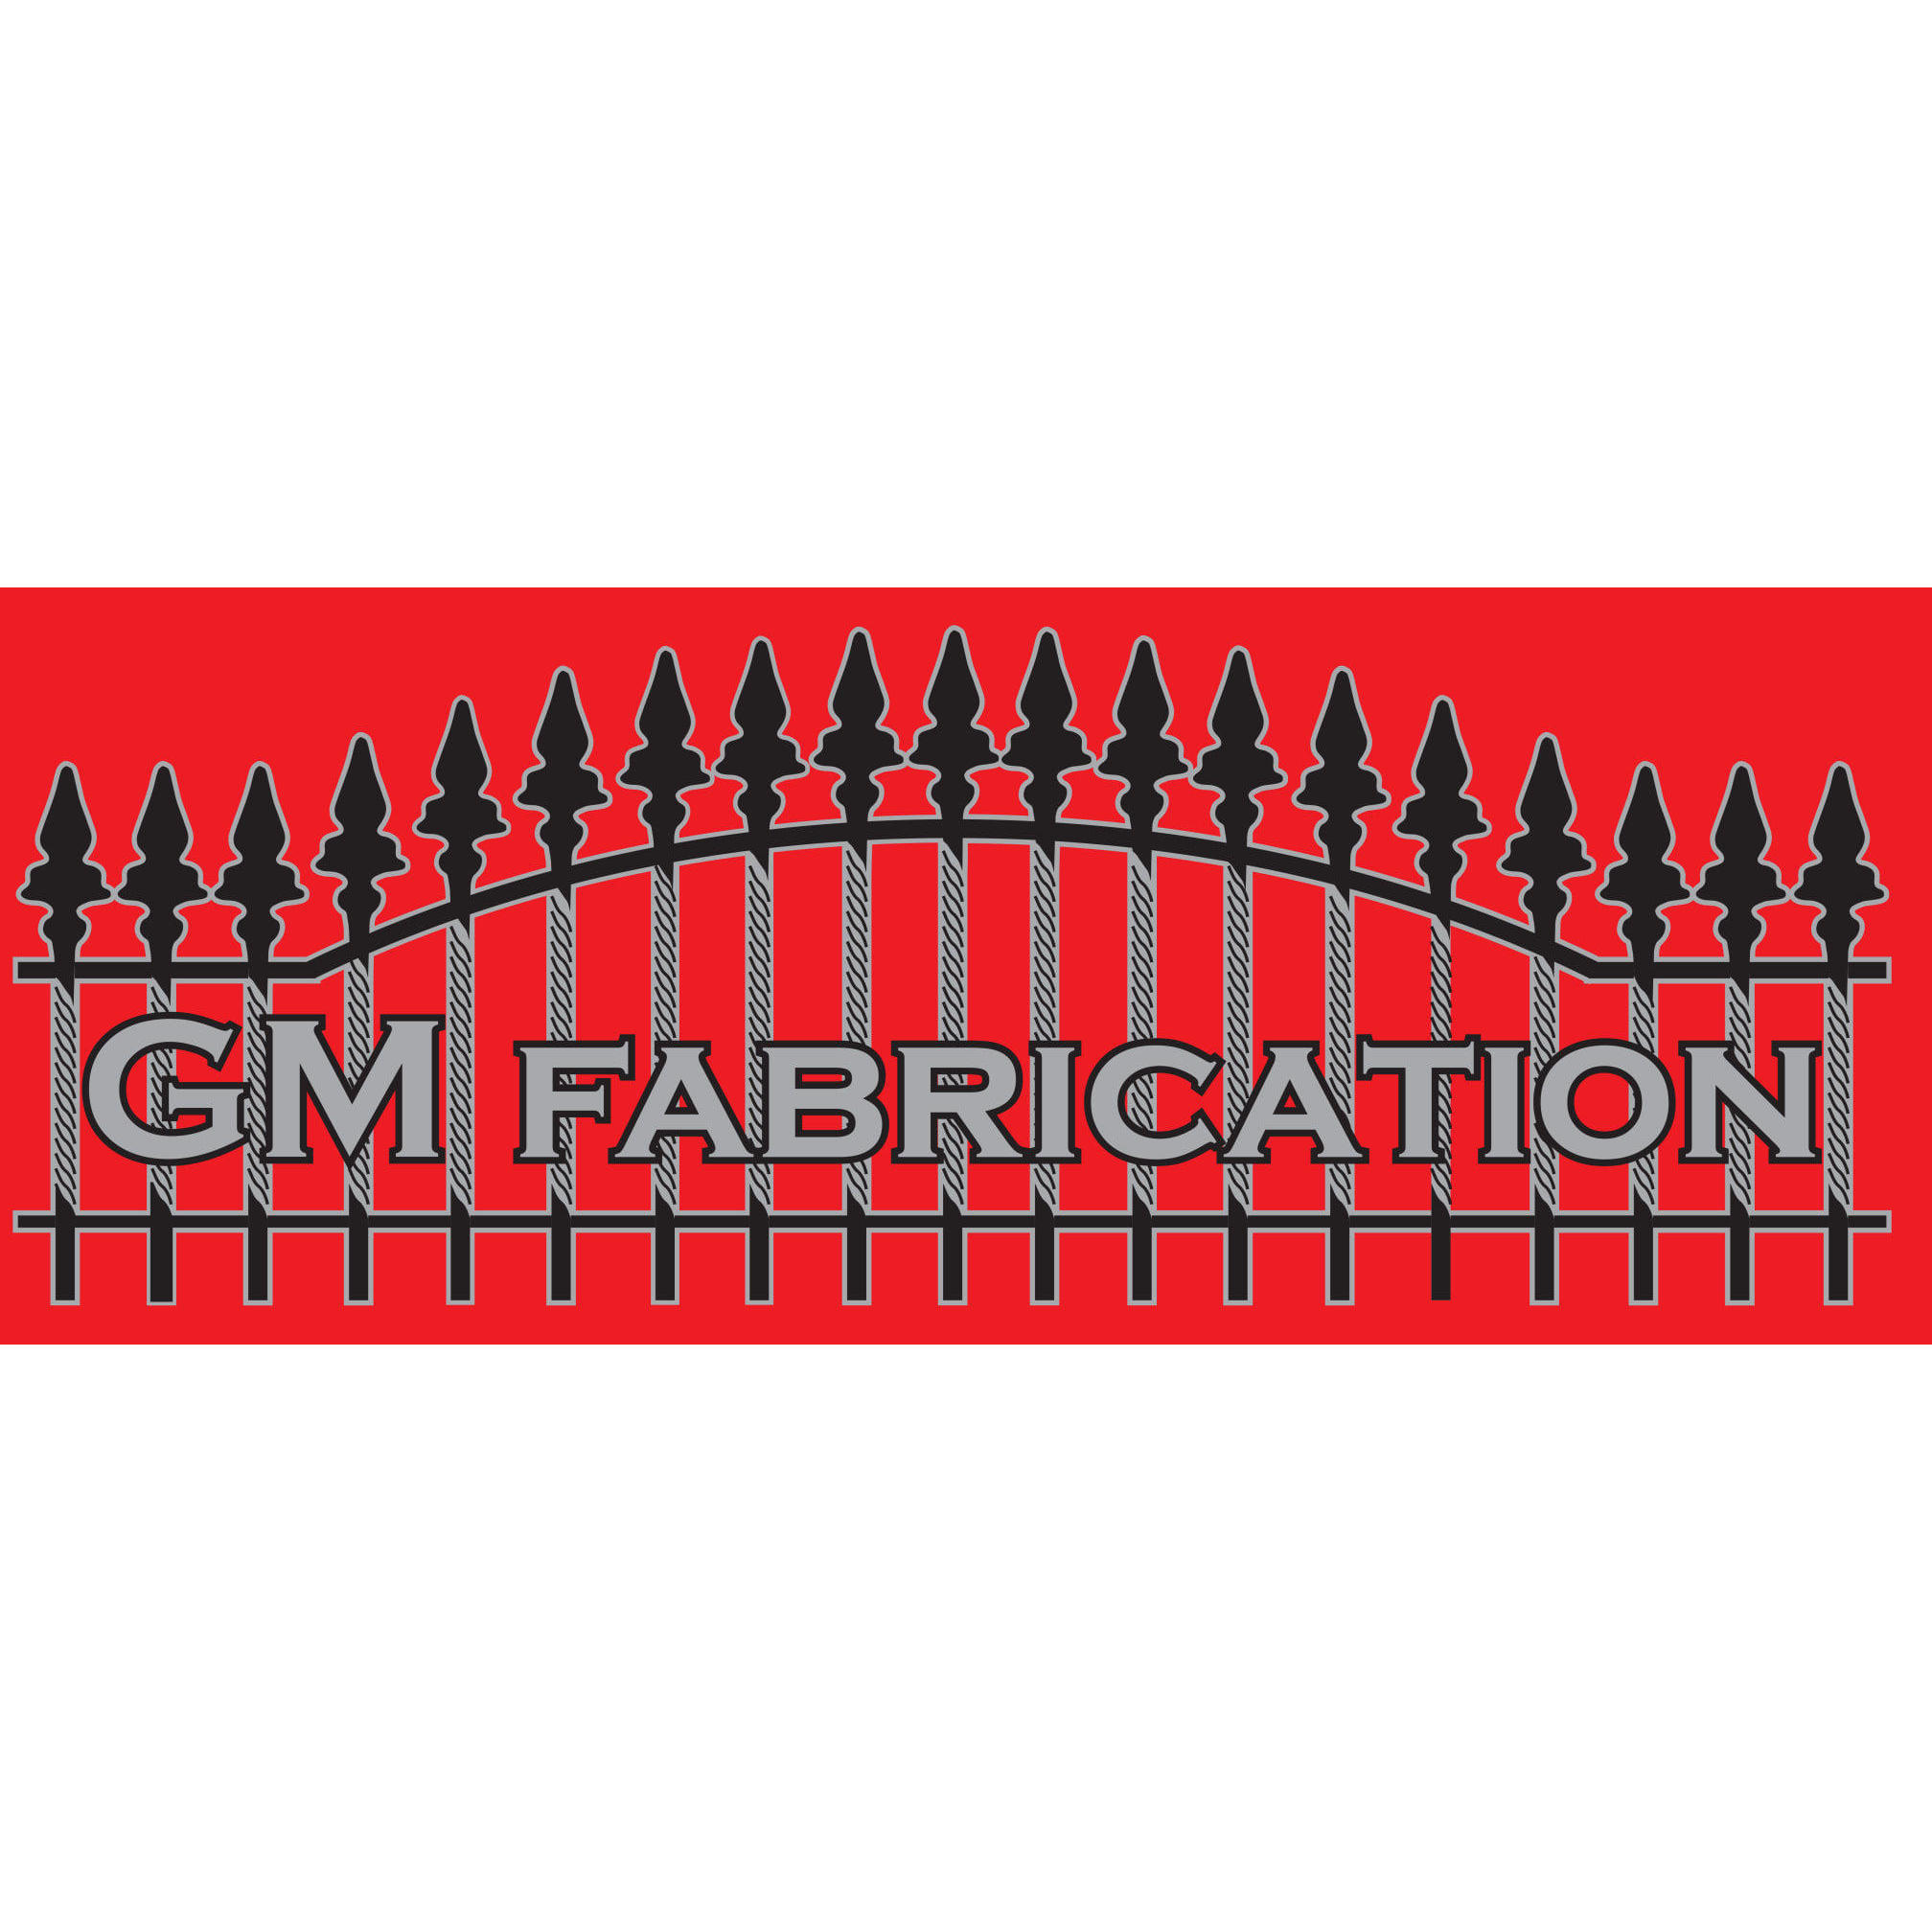 GM Fabrication (Gm Fab Ltd) logo